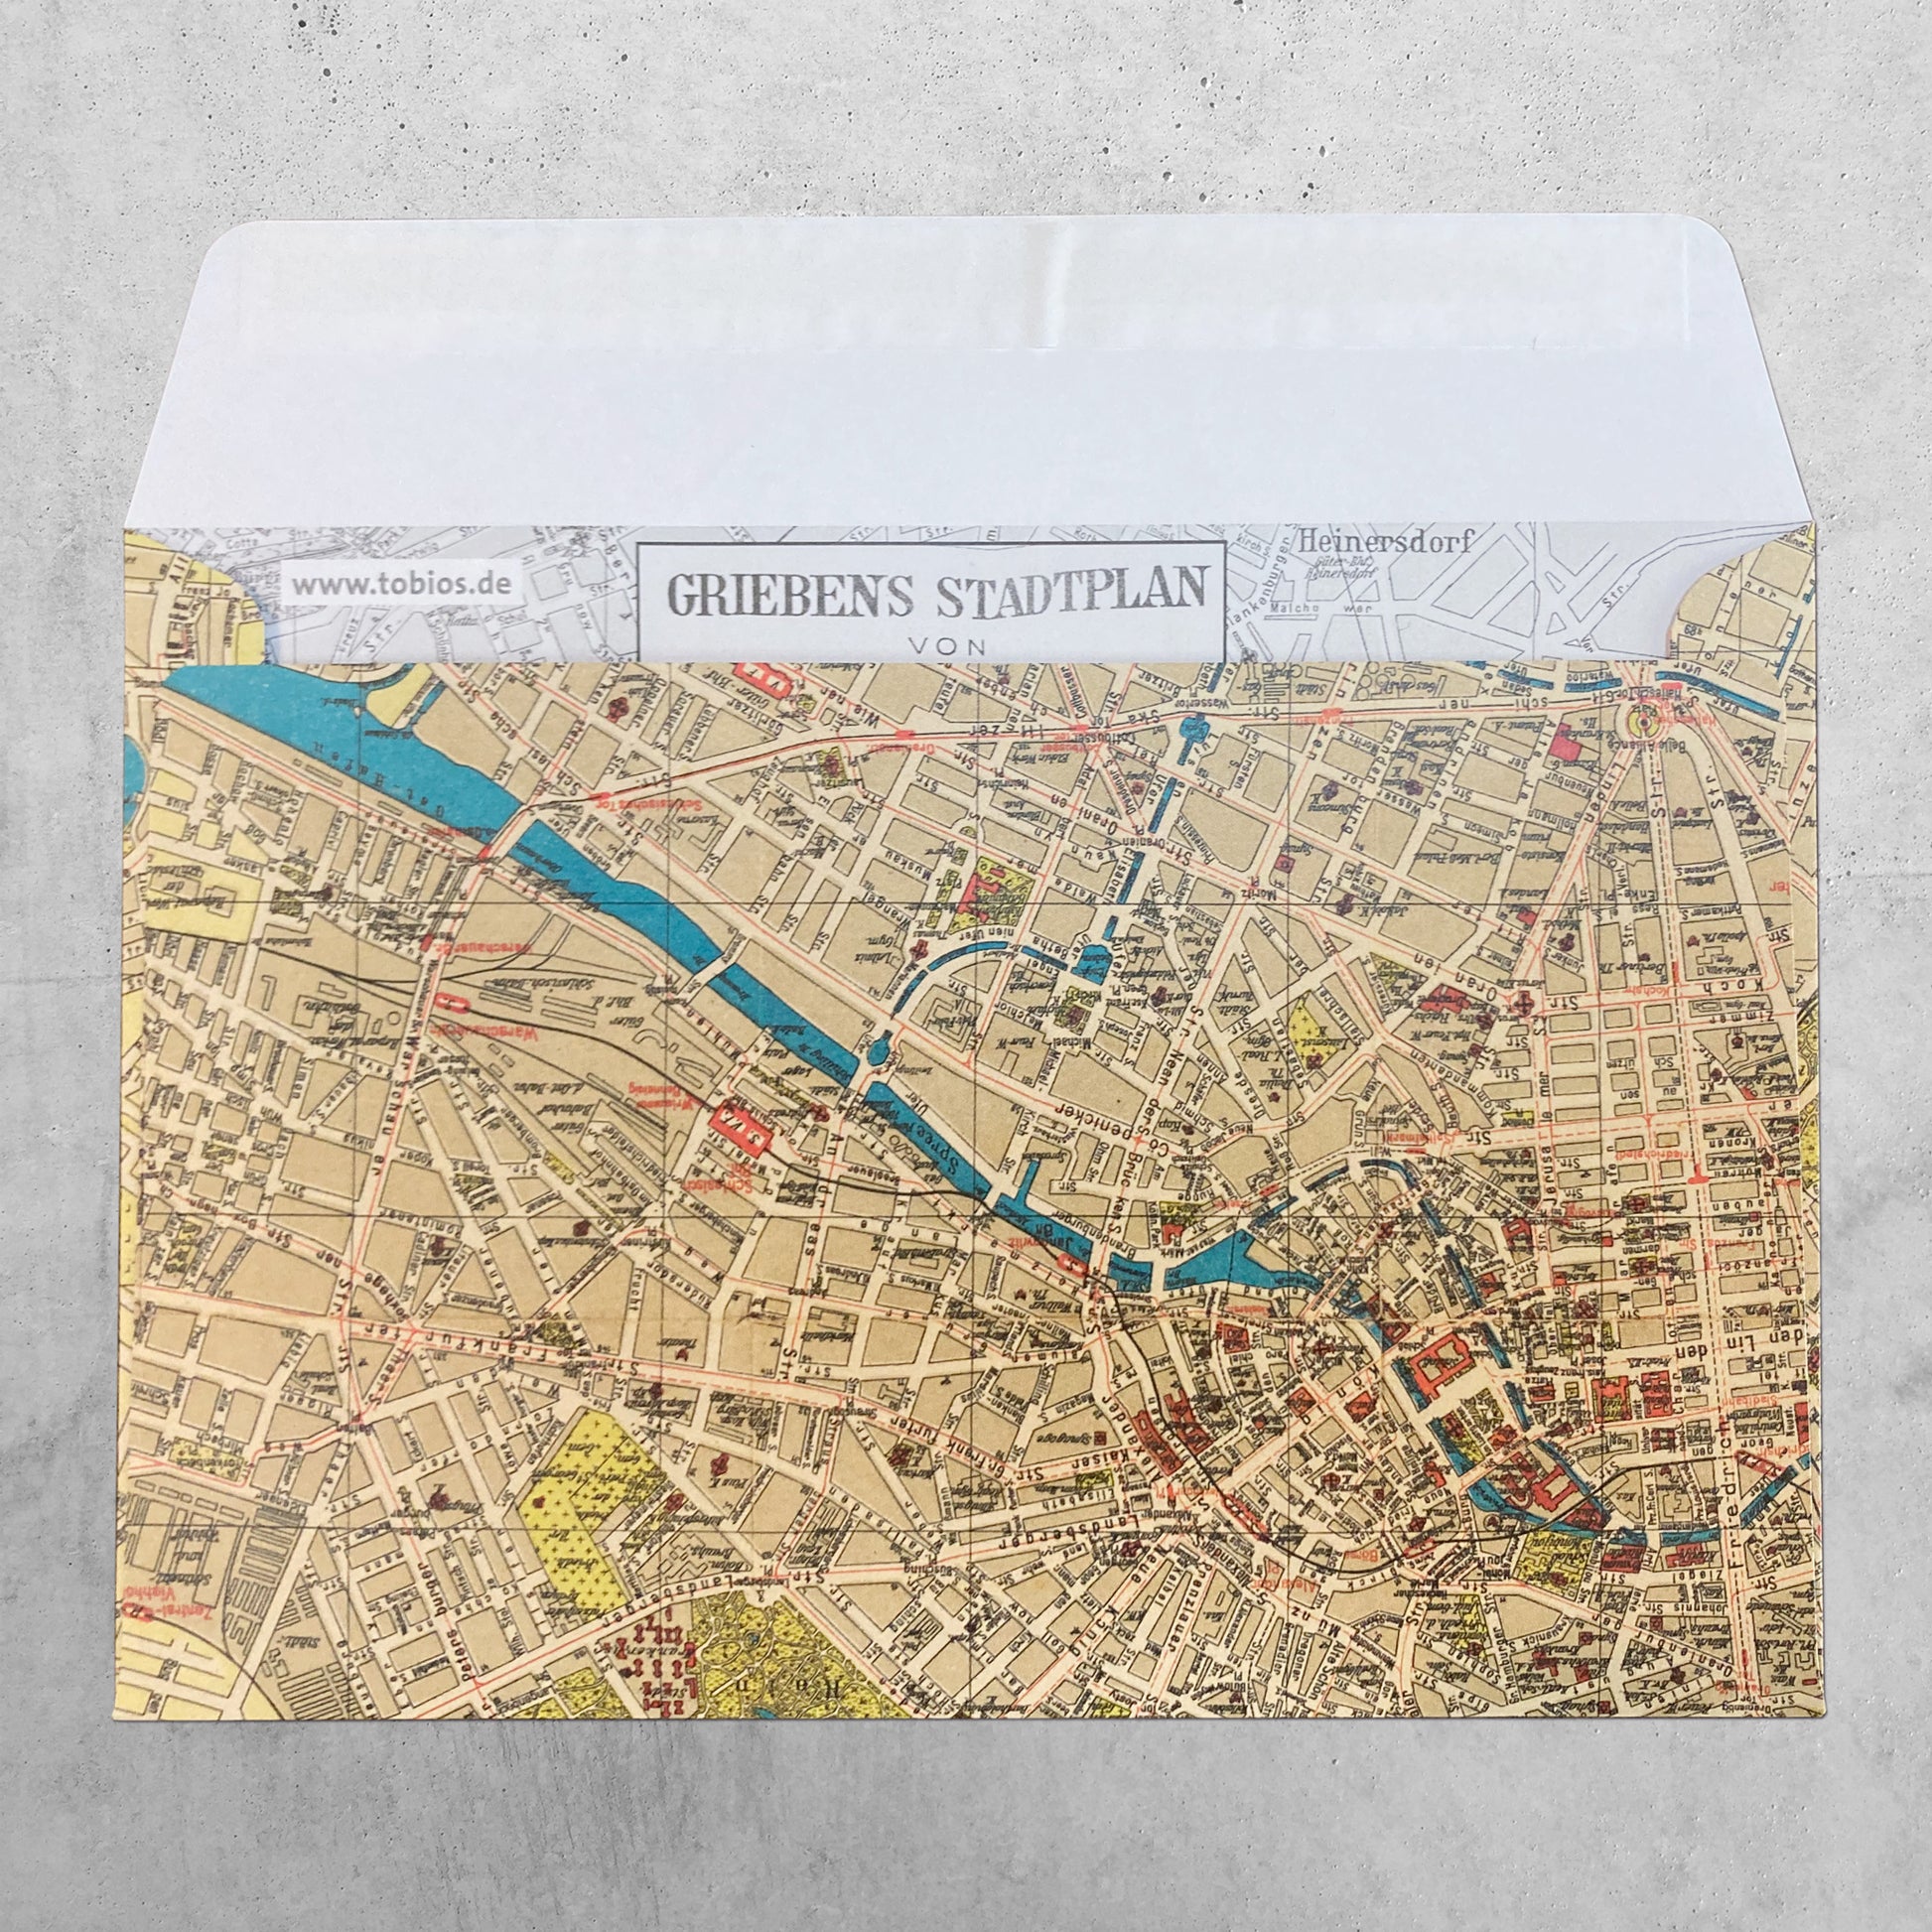 Griebens Stadtplan von Berlin von 1925 – historsicher Stadtplan – als Briefumschlag (C6) –  Rückseite, Klebelasche offen